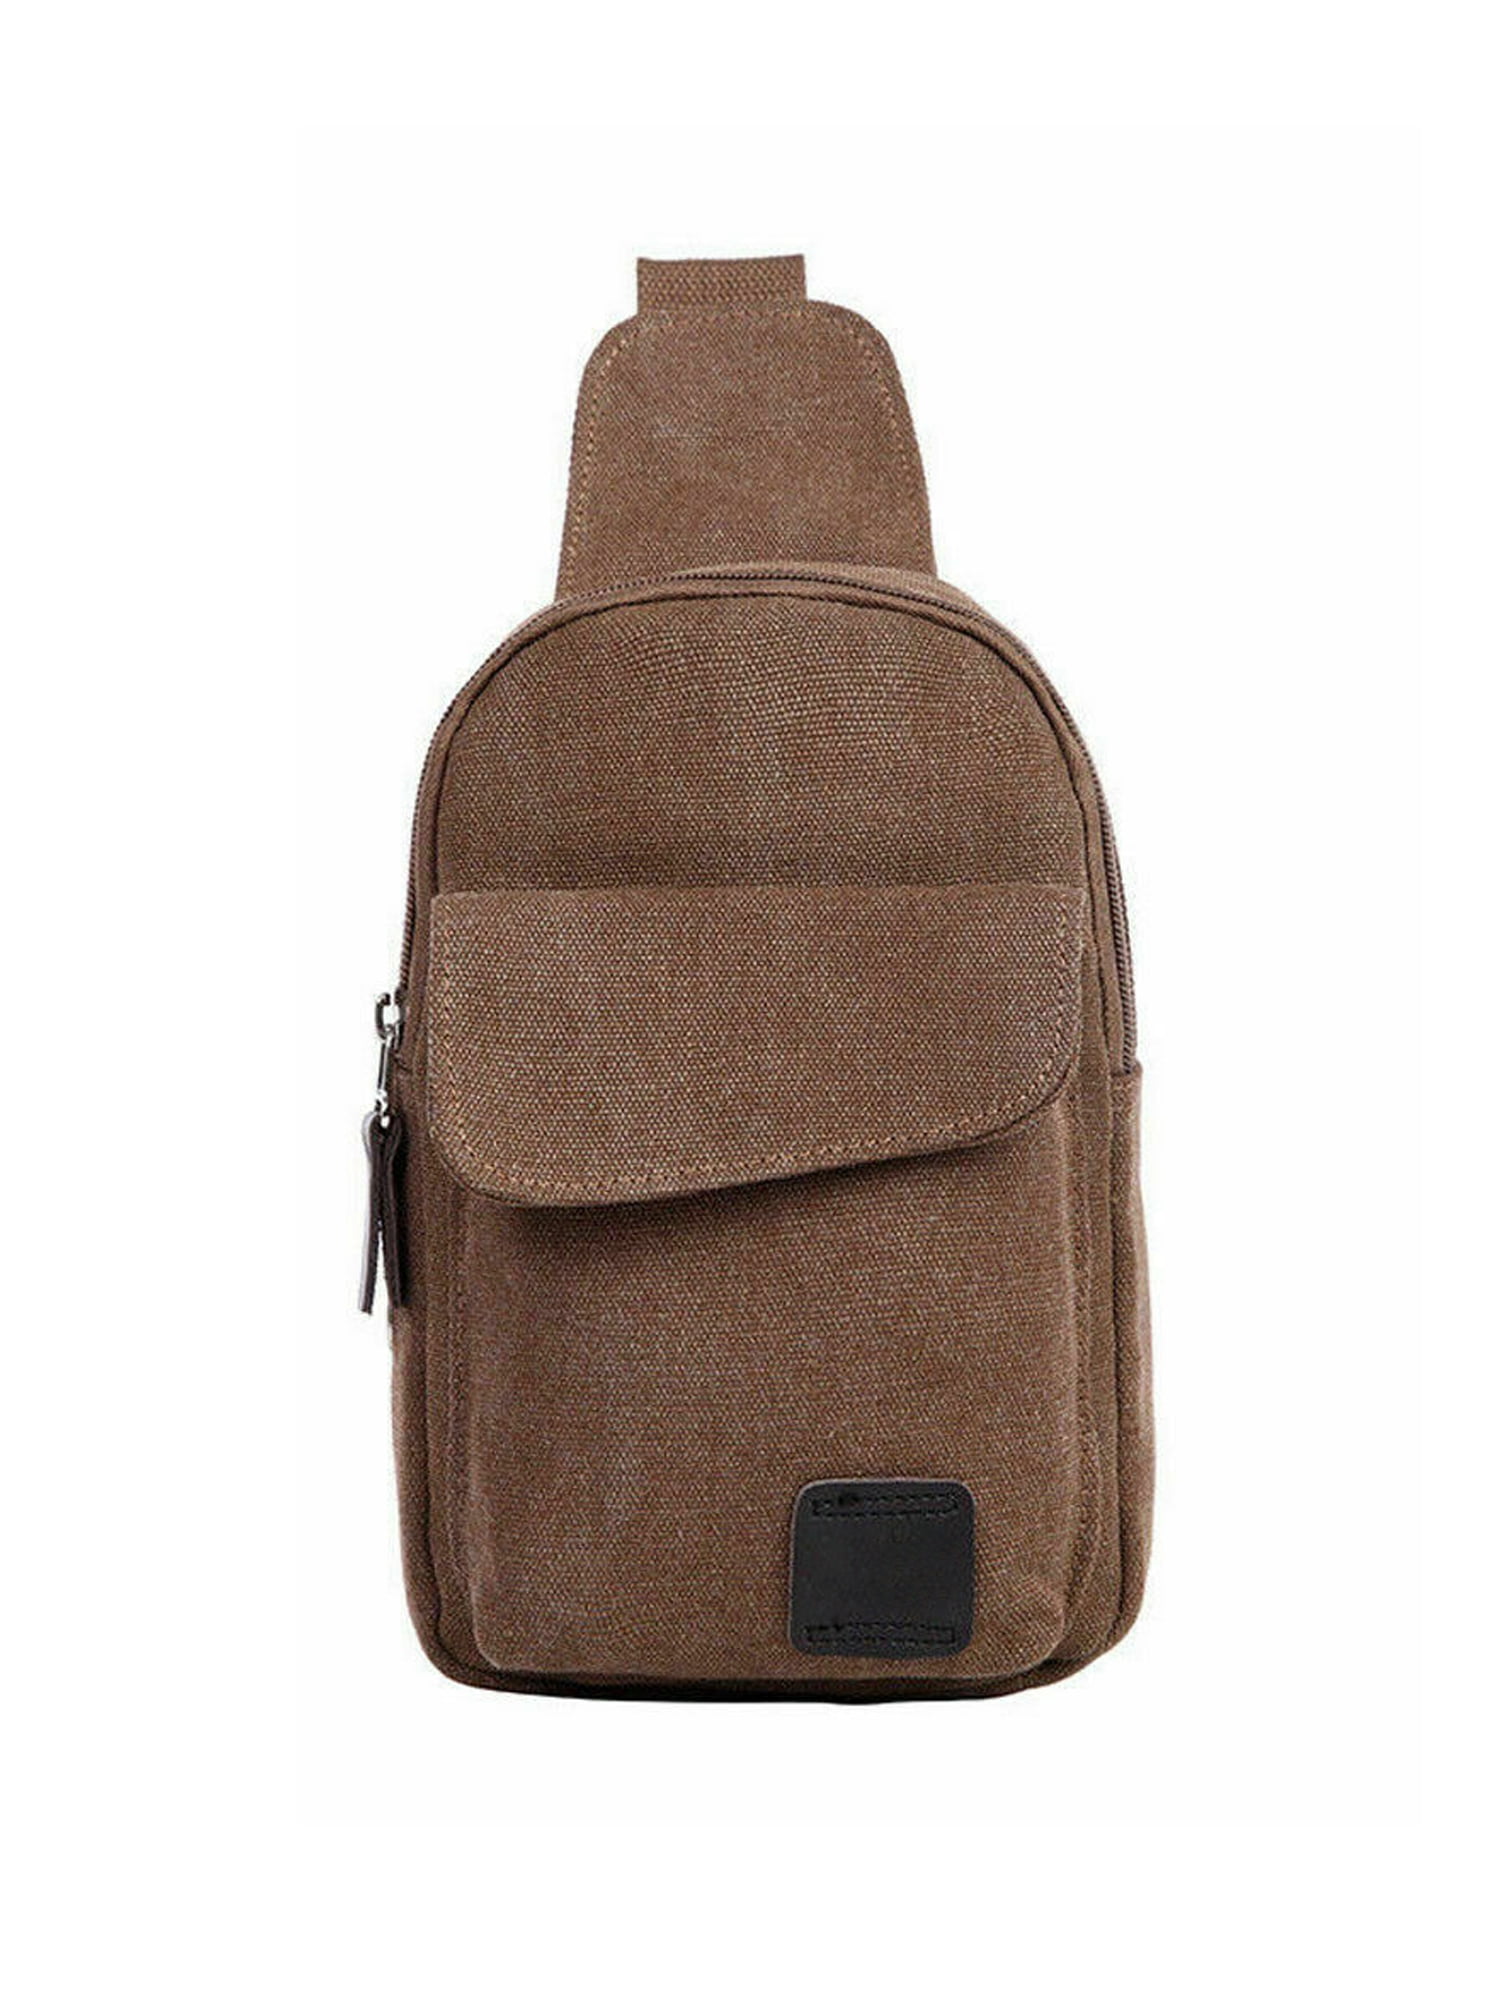 Large One Strap Travel Sport Crossbody Shoulder Bag for Men Women Plambag Canvas Sling Backpack 